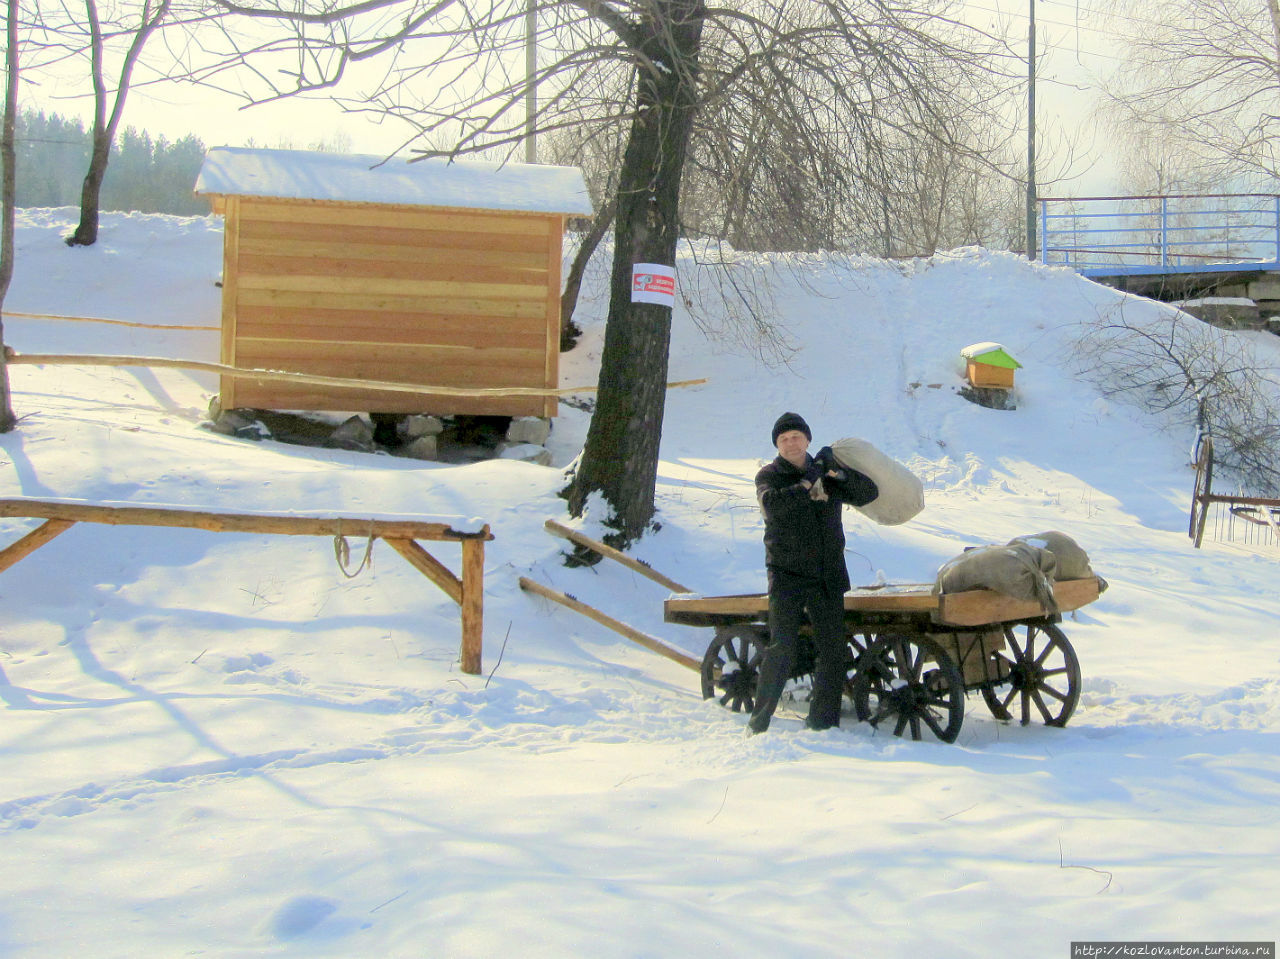 Напротив музея и в мороз, и в стужу трудятся, не разгибая спины, местные крестьяне. Белокуриха, Россия